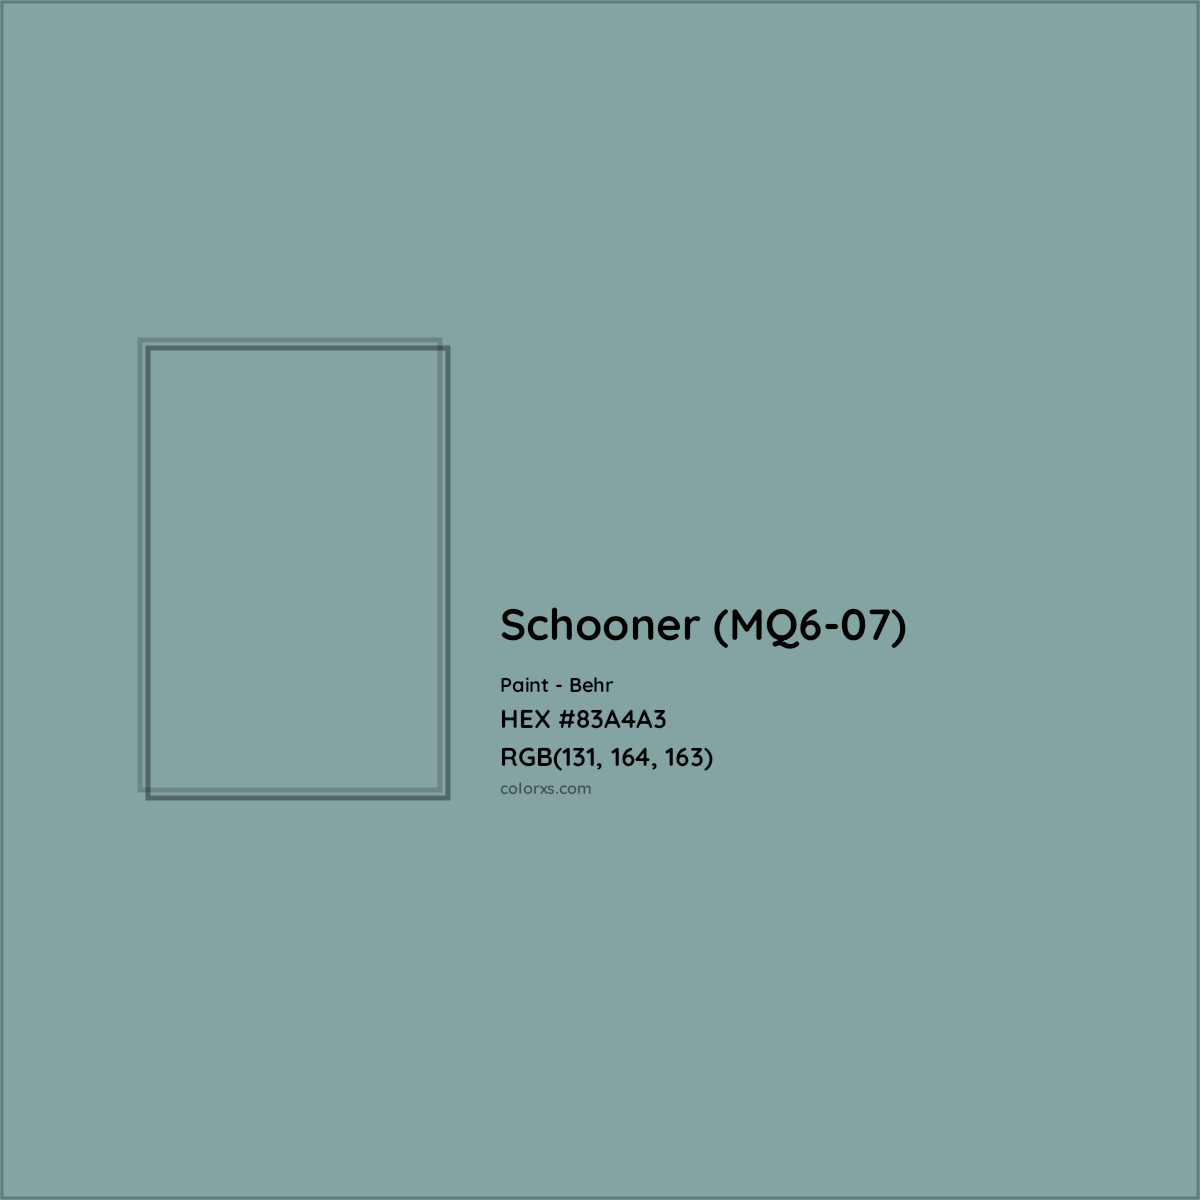 HEX #83A4A3 Schooner (MQ6-07) Paint Behr - Color Code